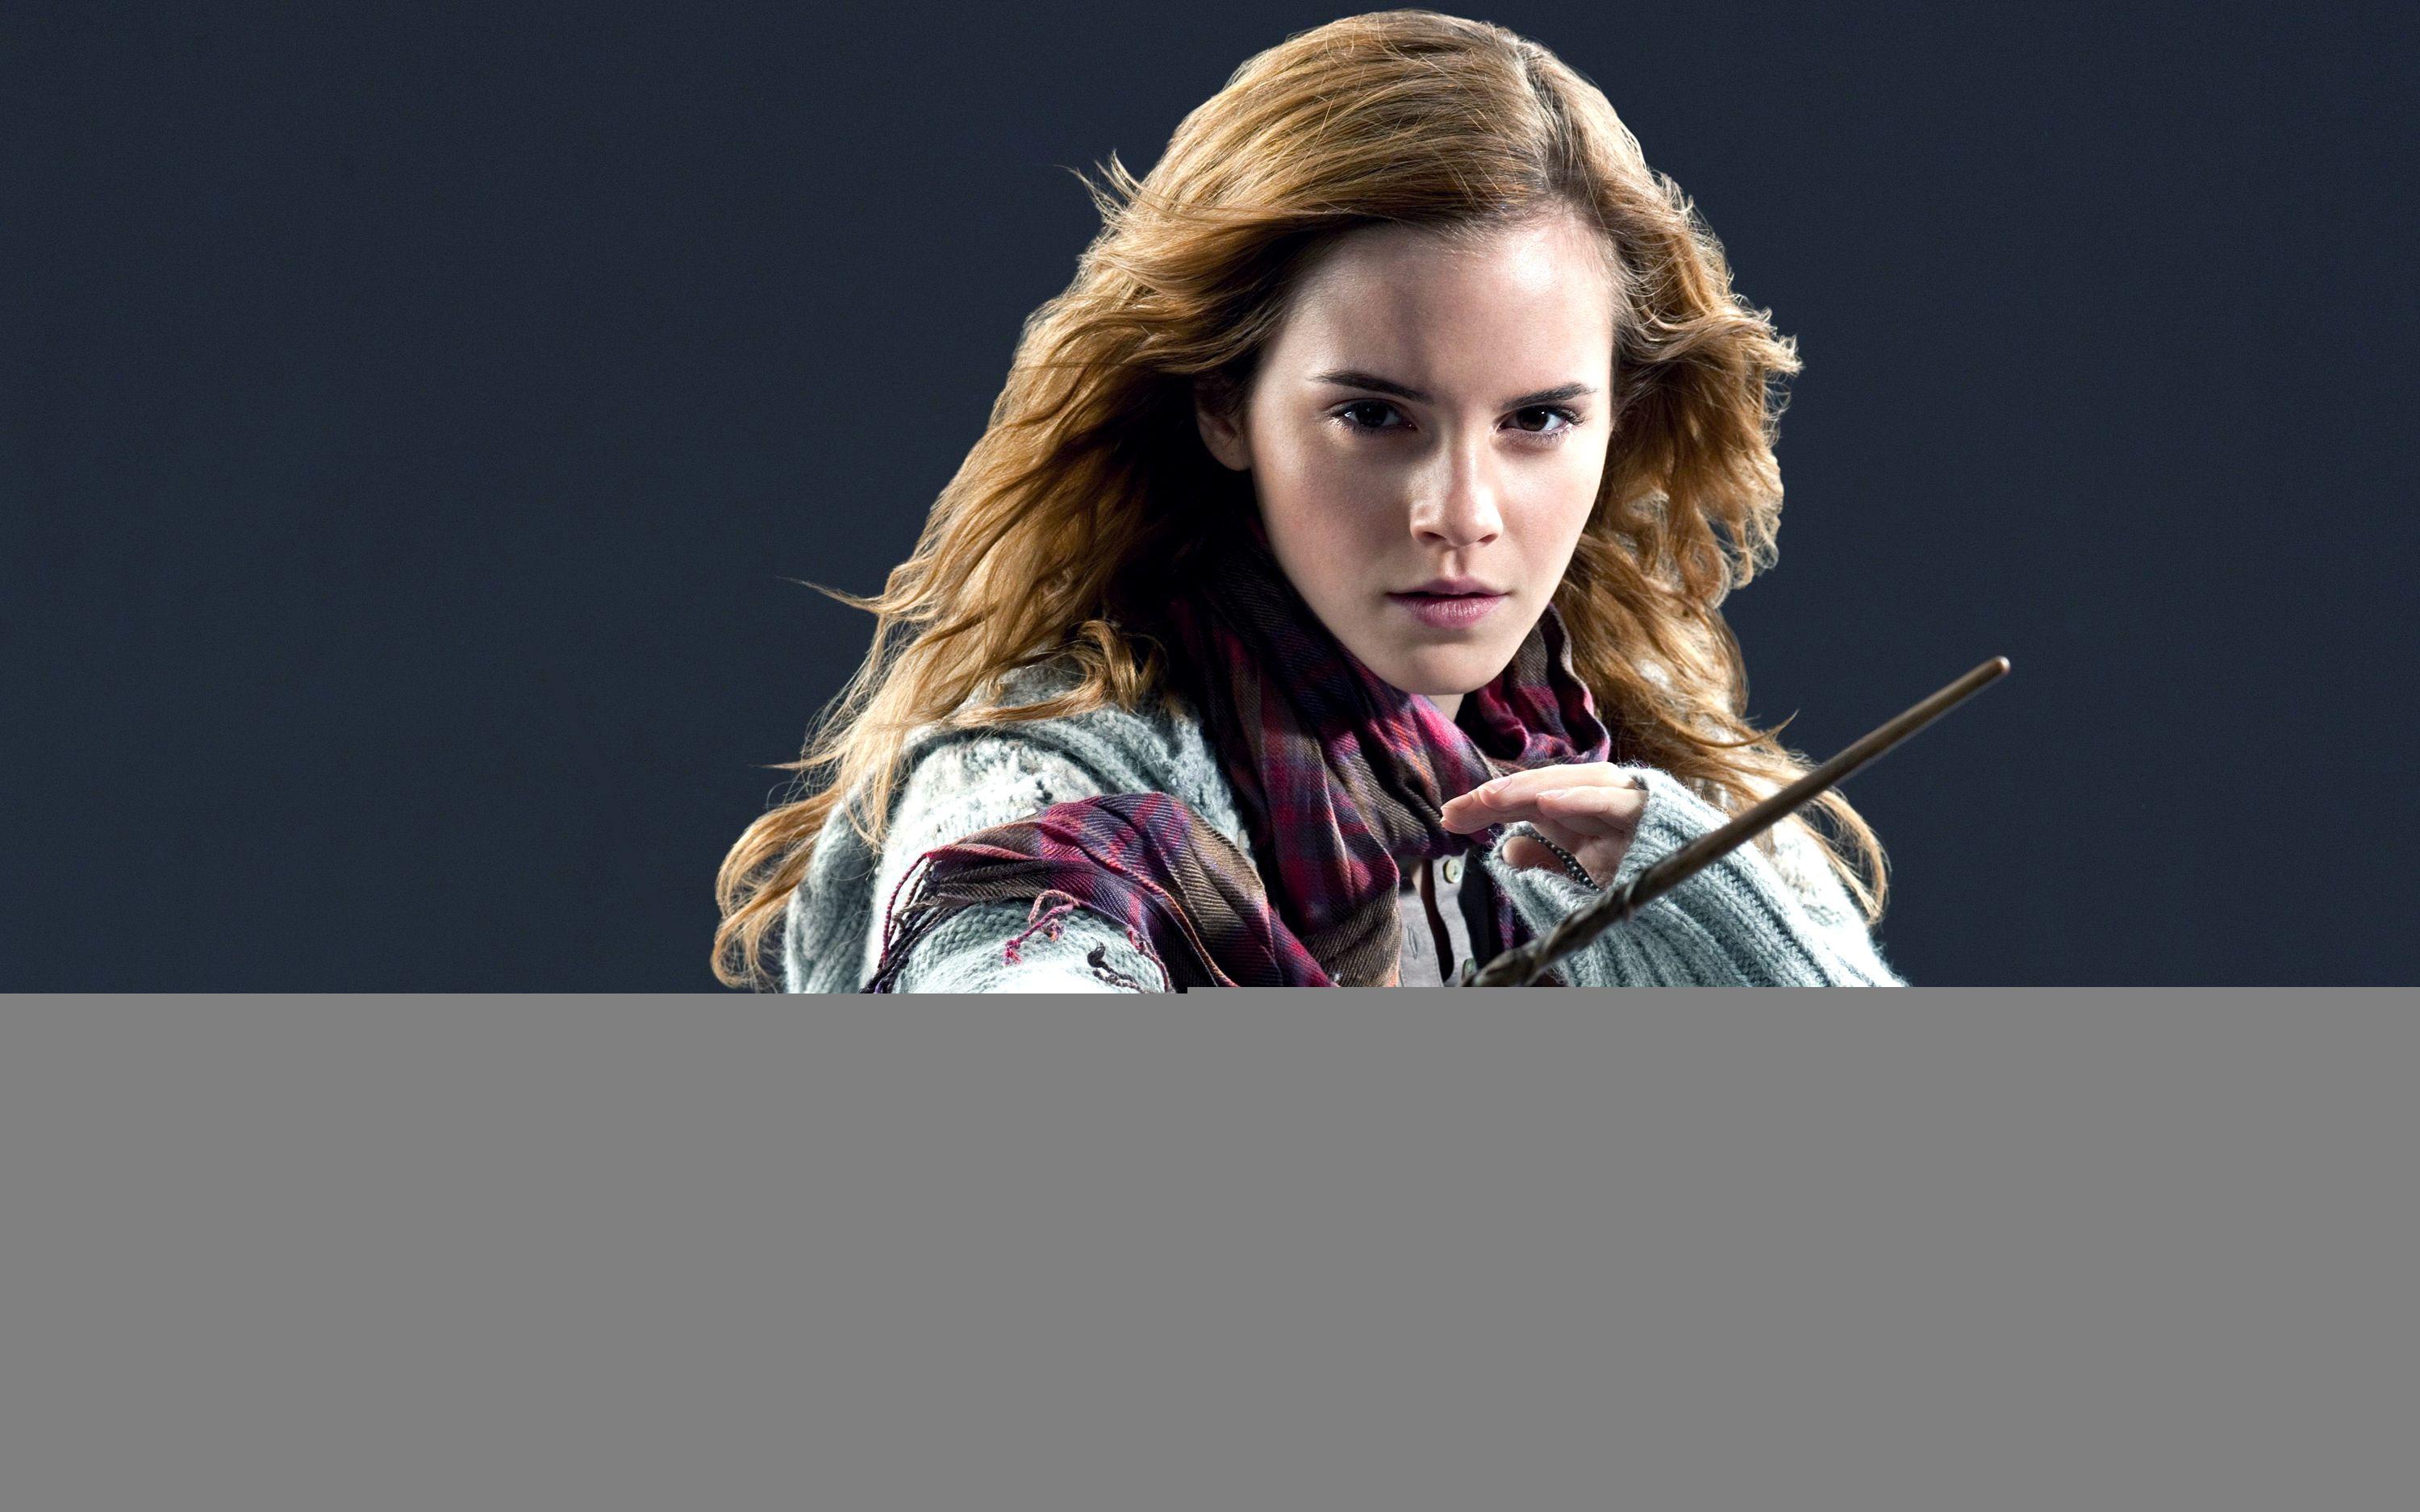 Emma Watson HP Deathly Hallows Part 2 Wallpaper. HD Wallpaper